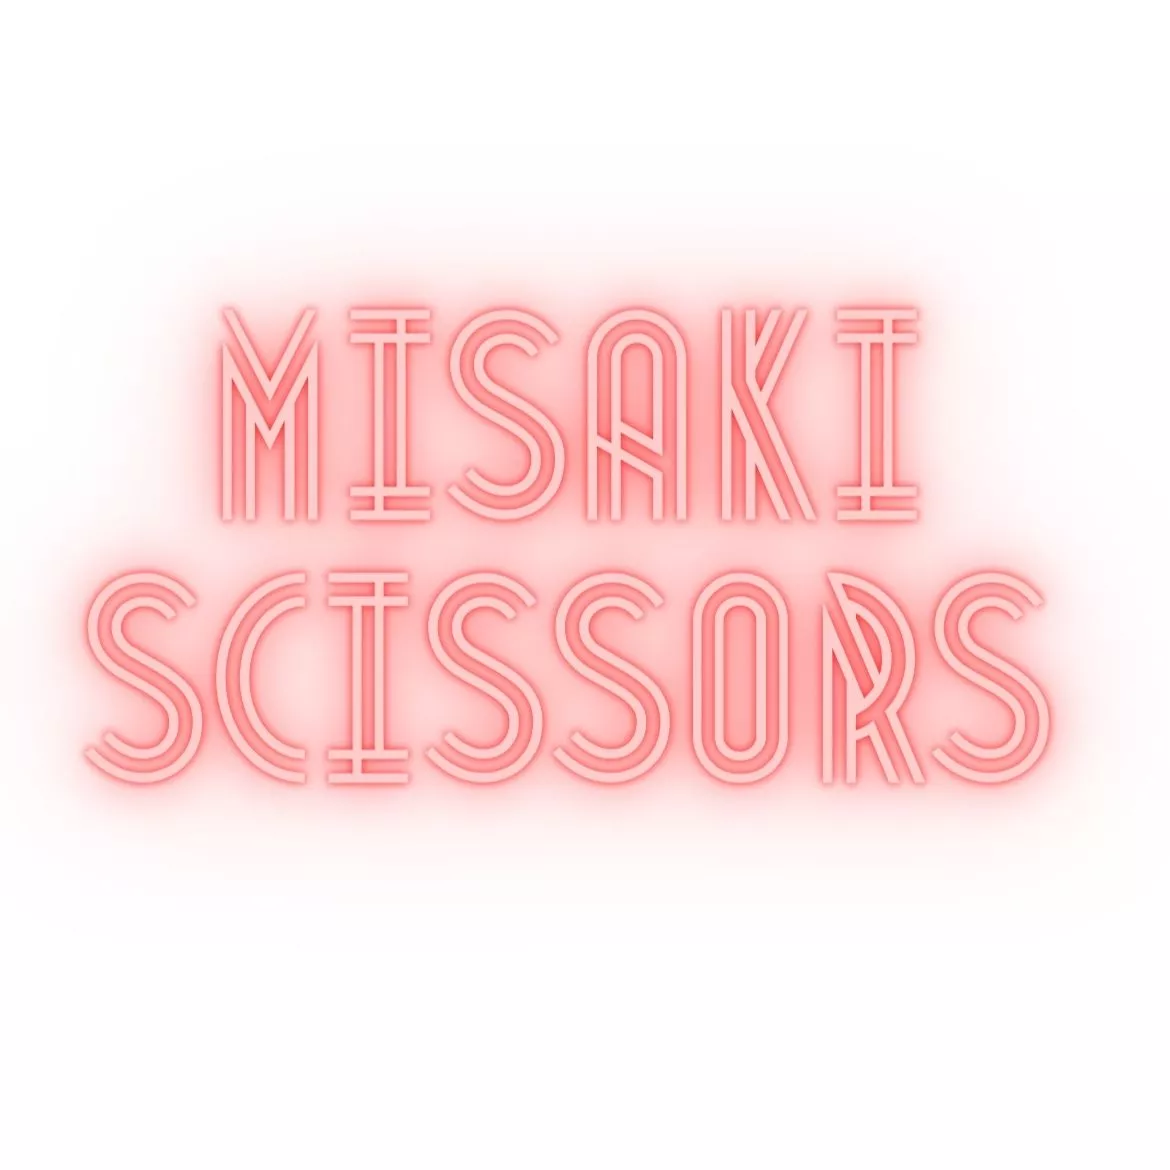 Misaki Scissors